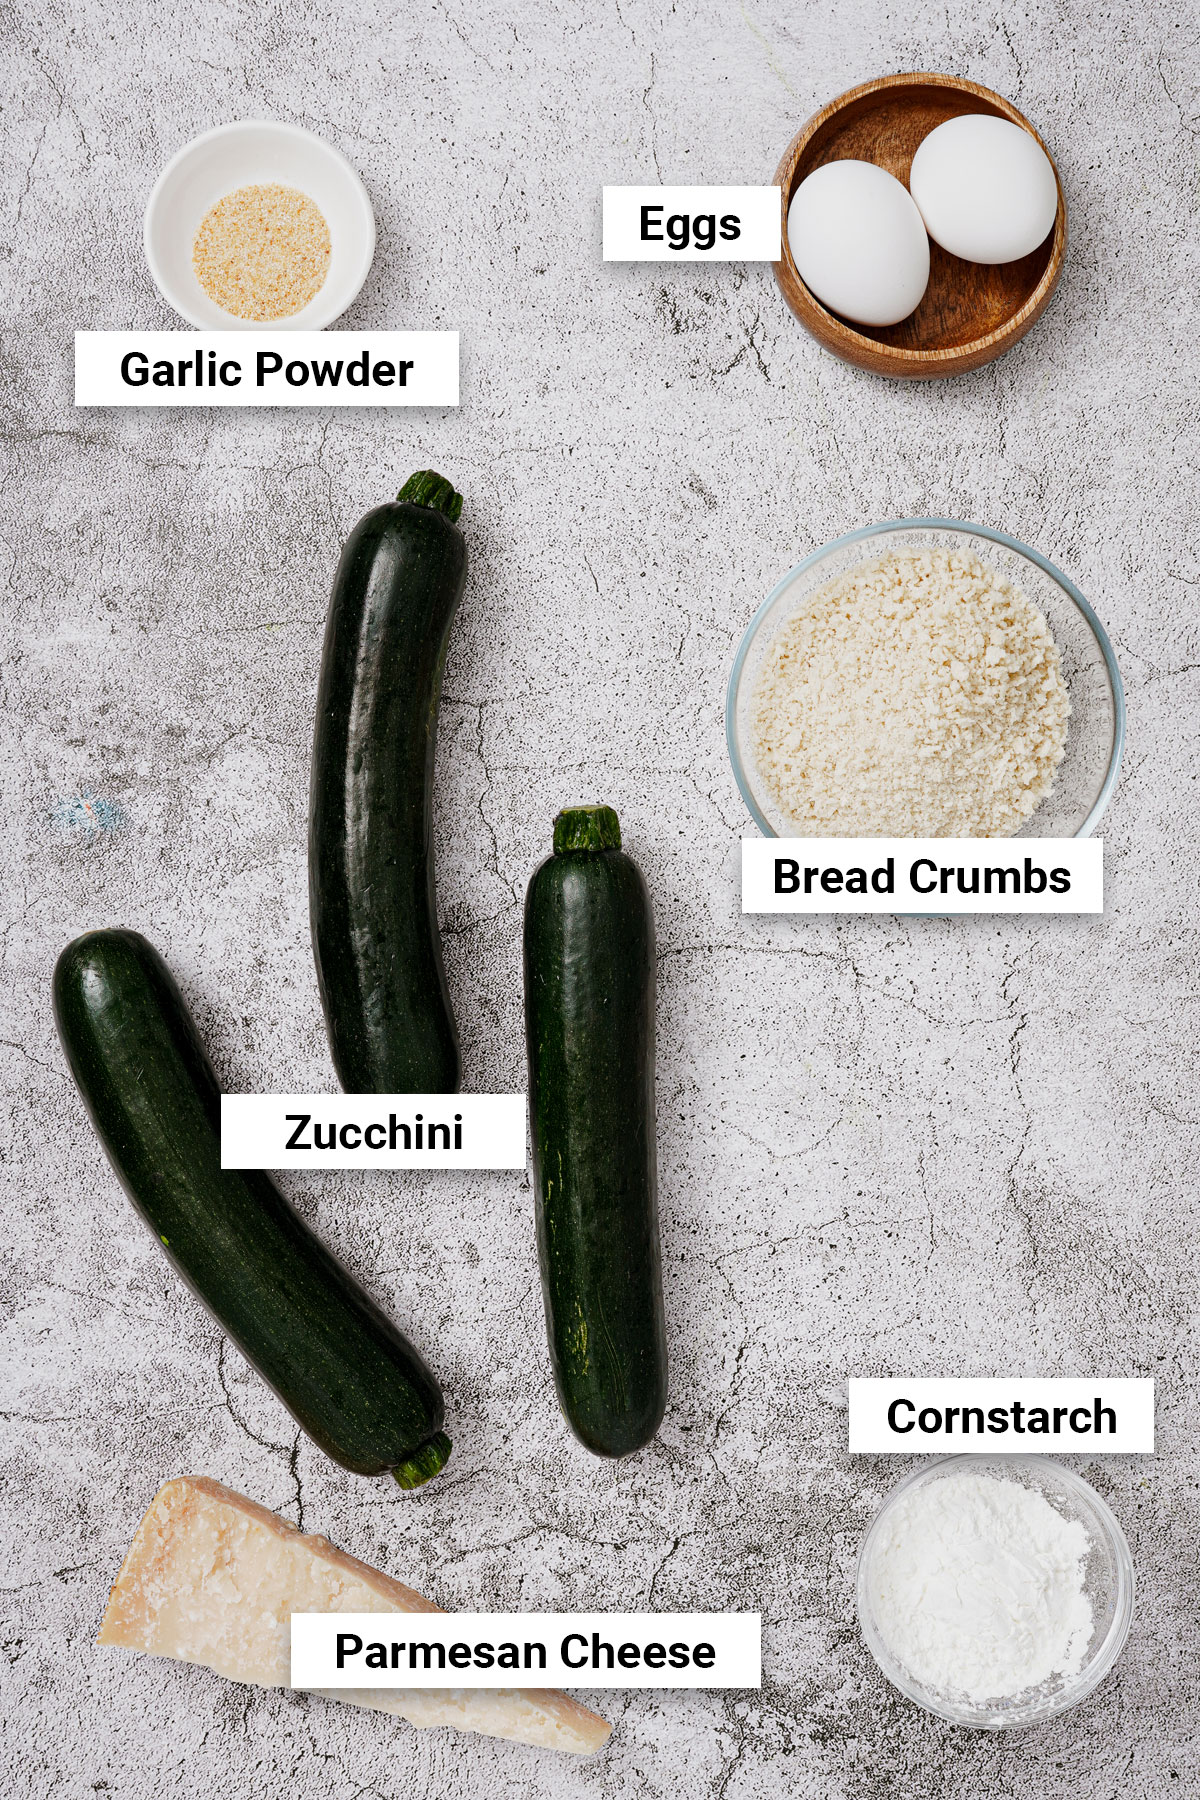 Zucchini crisps air fryer ingredients